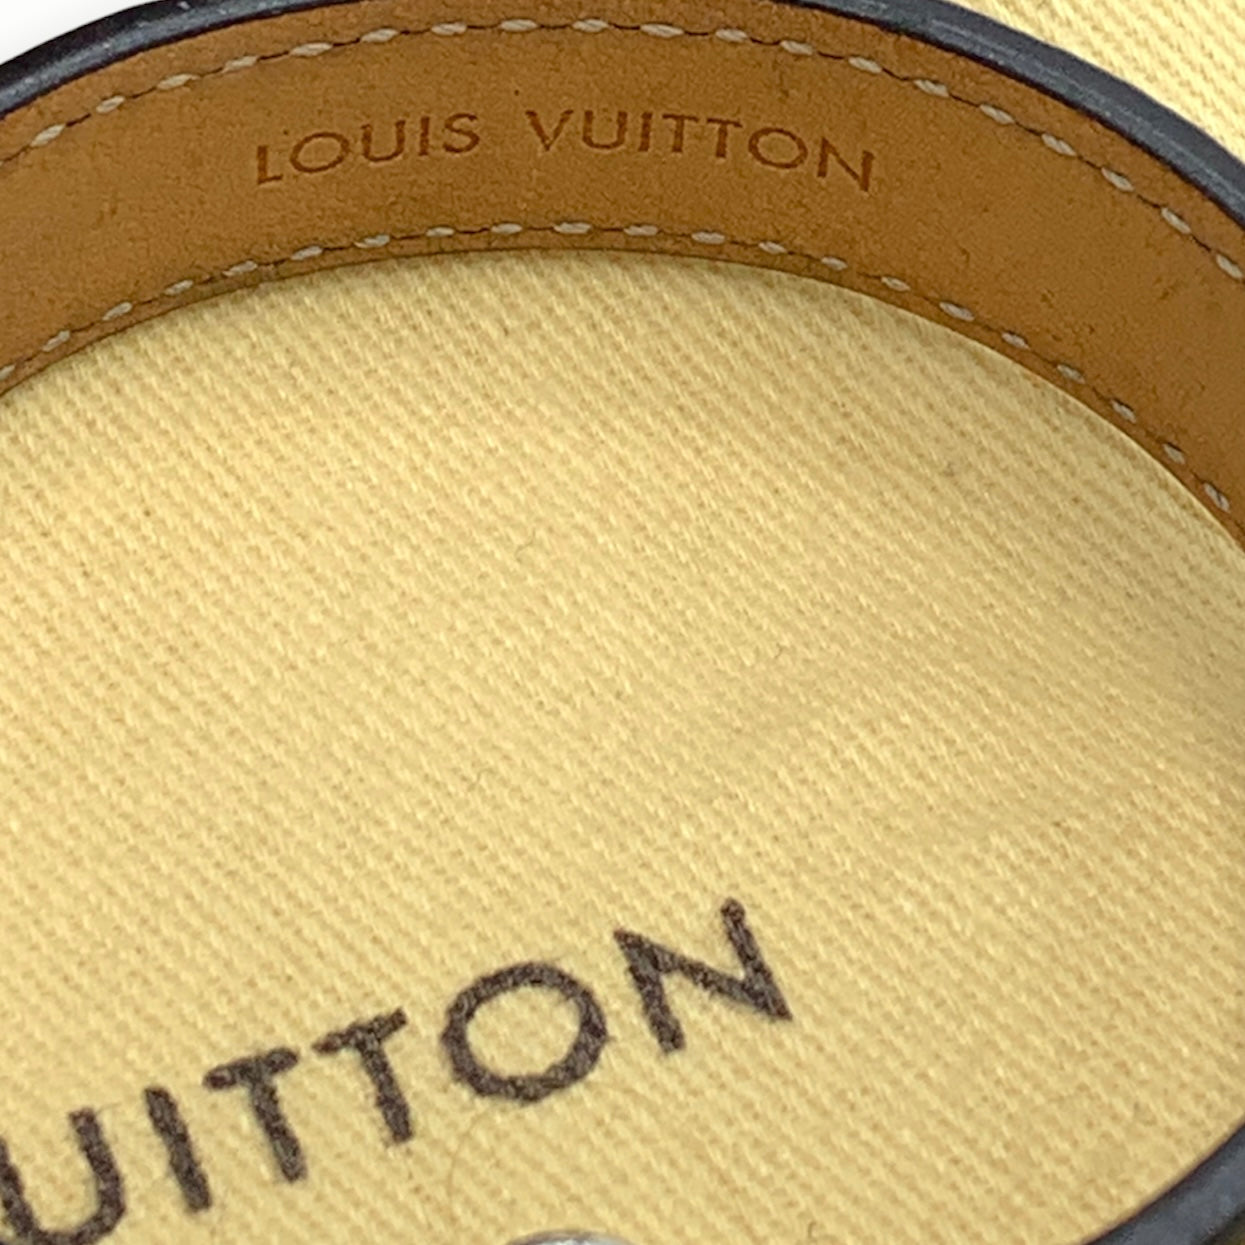 Louis Vuitton Nano Monogram Wrap Bracelet - Brown, Gold-Plated